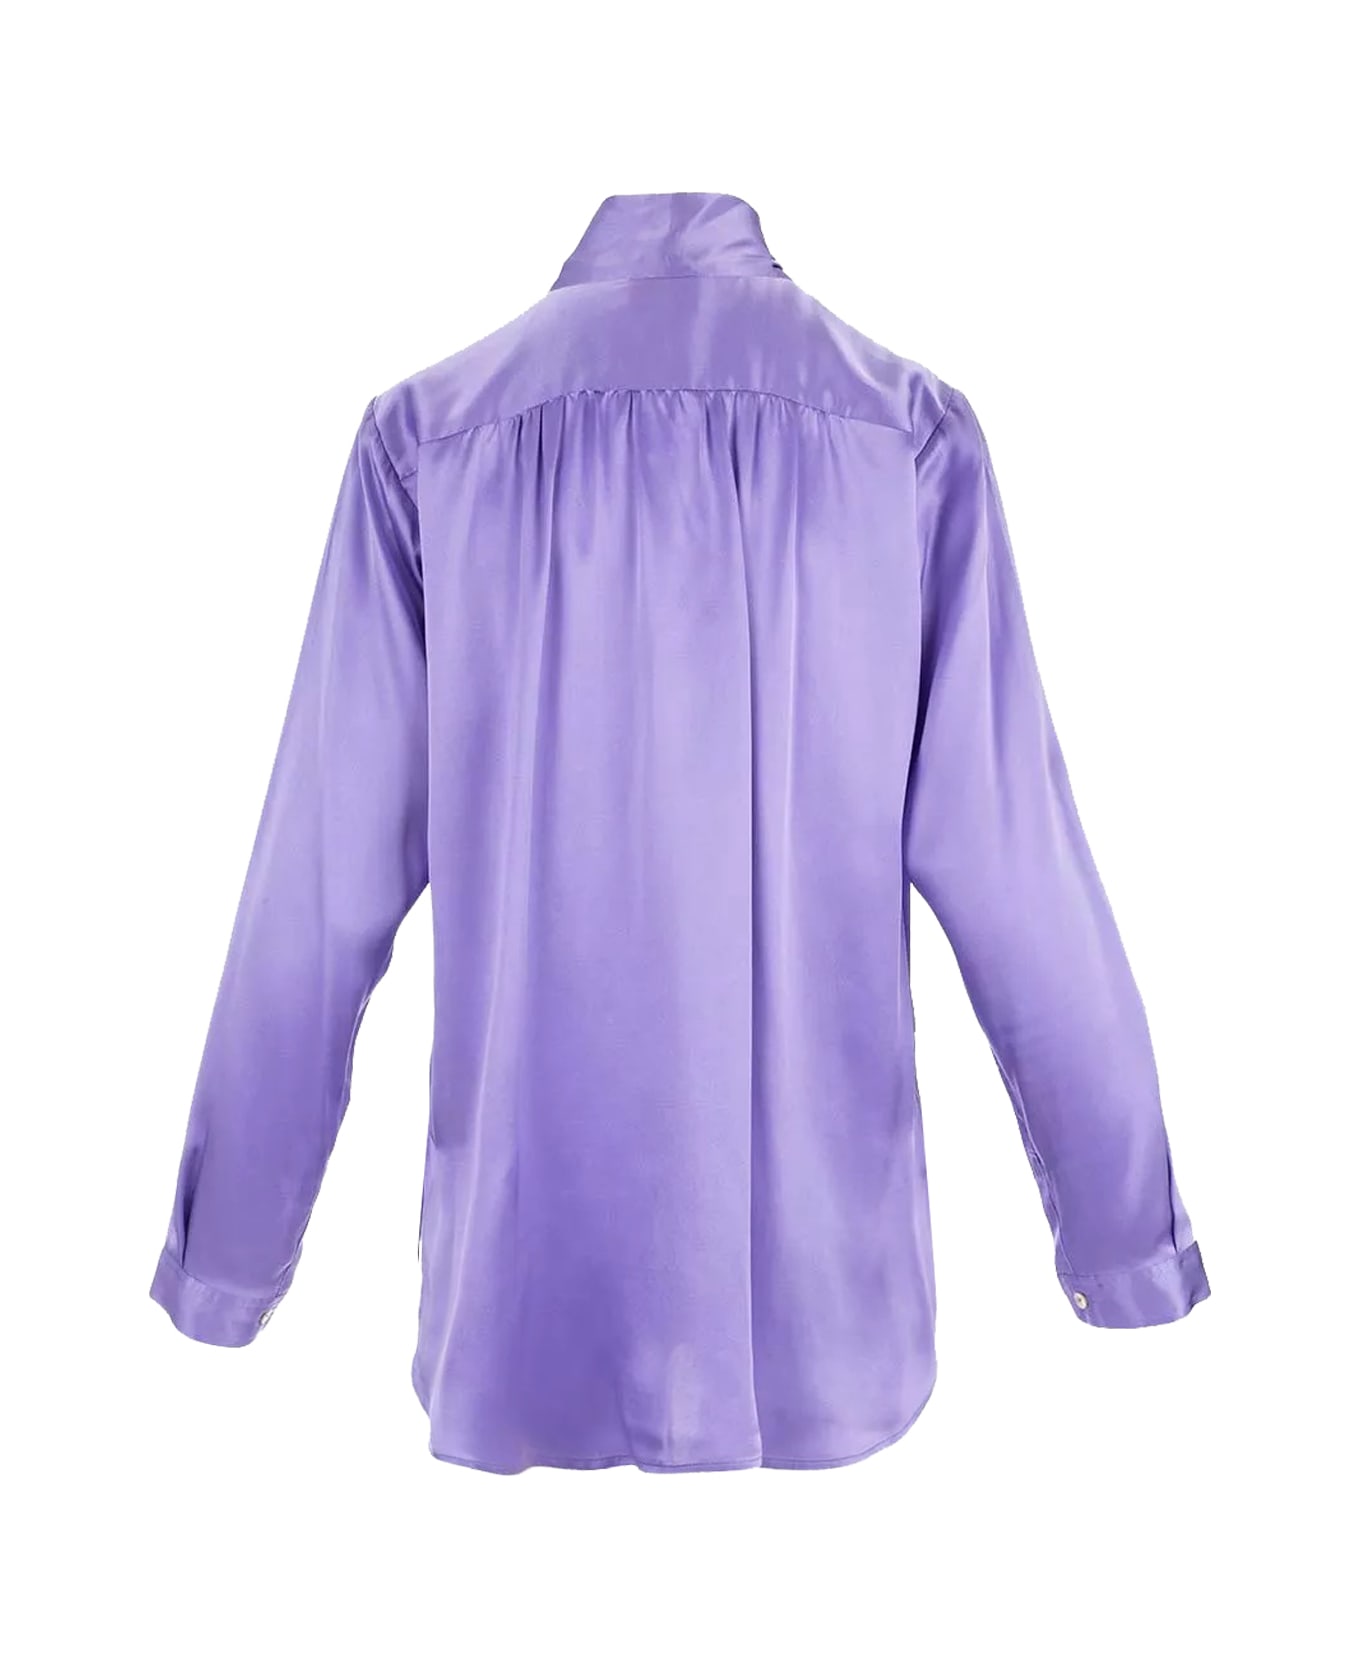 Parosh Shirt - Lilac